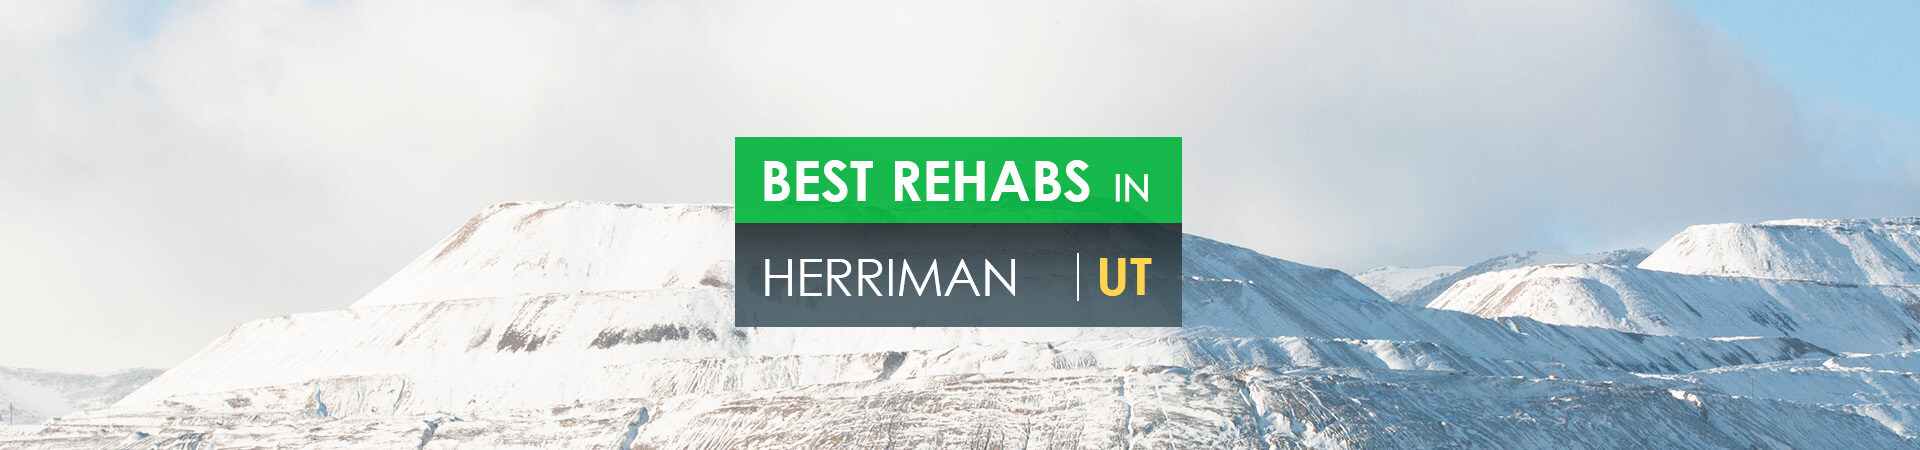 Best rehabs in Herriman, UT